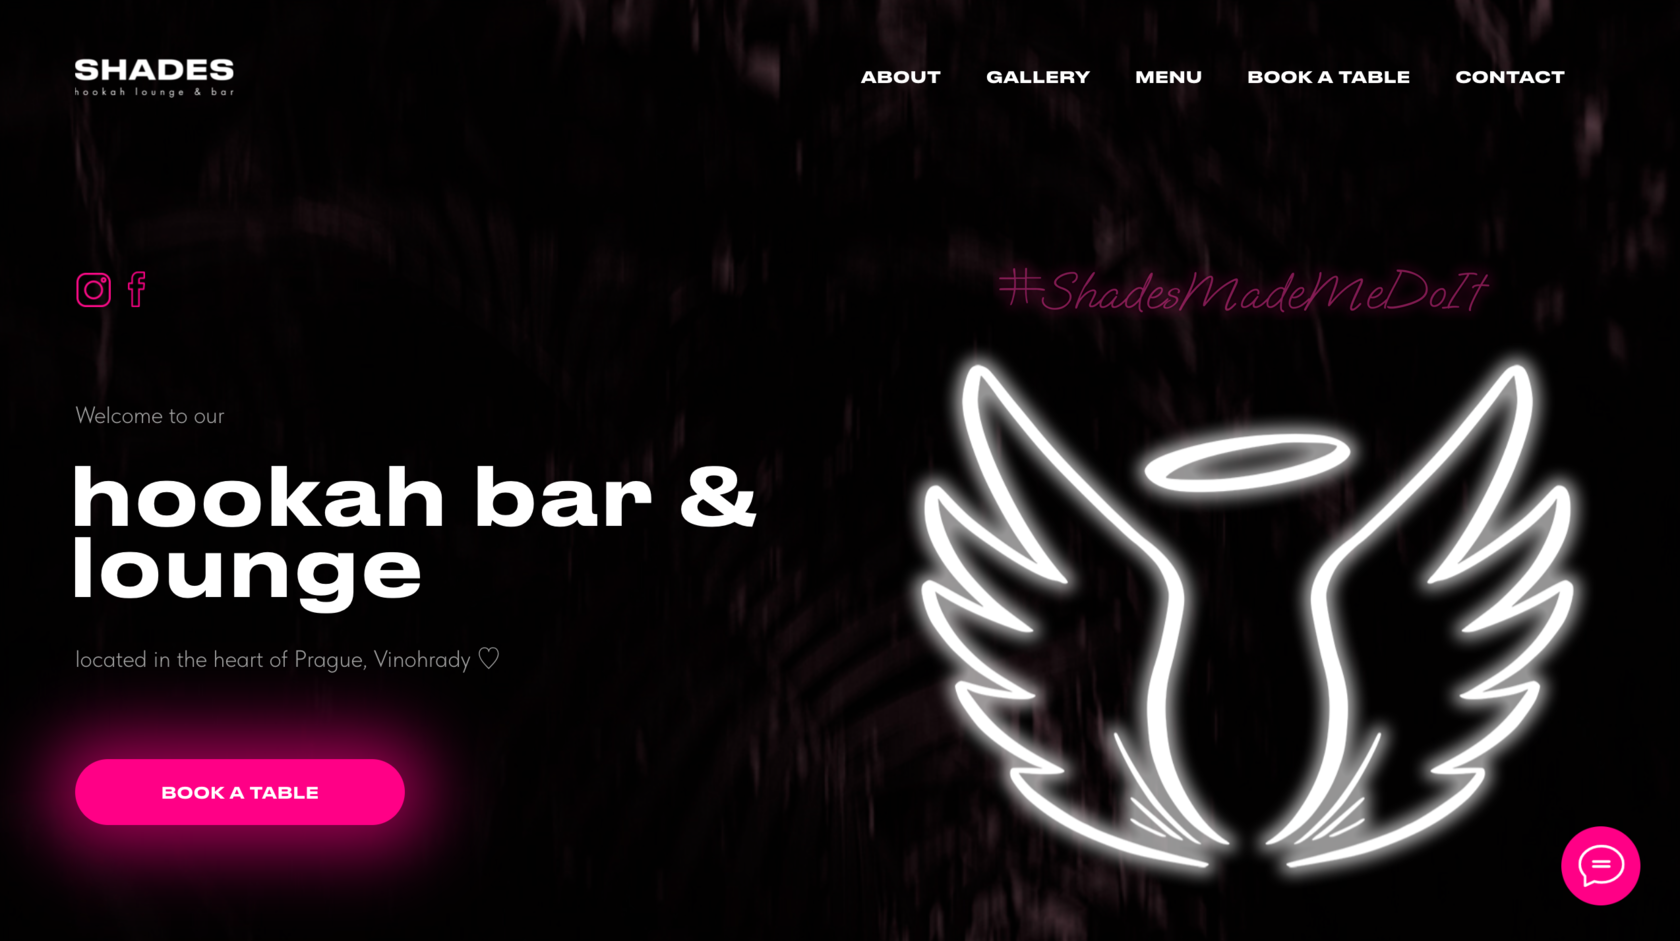 Shades Prague - Hookah Bar & Lounge - Praha 2 Vinohrady